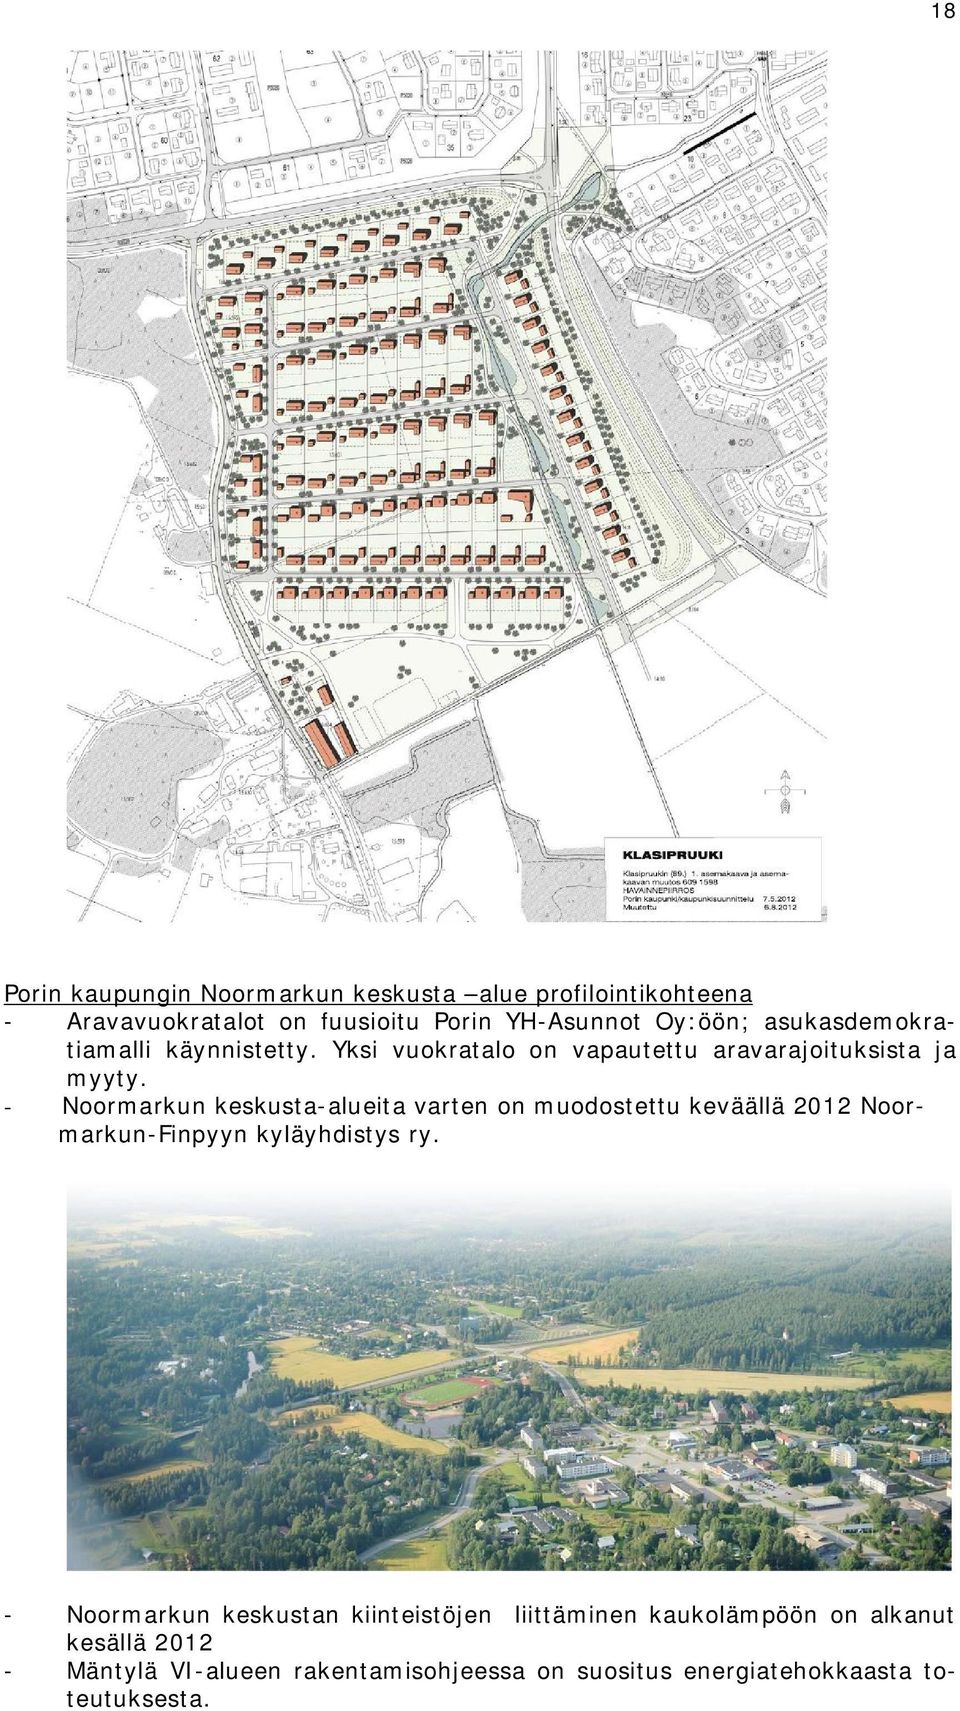 - Noormarkun keskusta-alueita varten on muodostettu keväällä 2012 Noormarkun-Finpyyn kyläyhdistys ry.